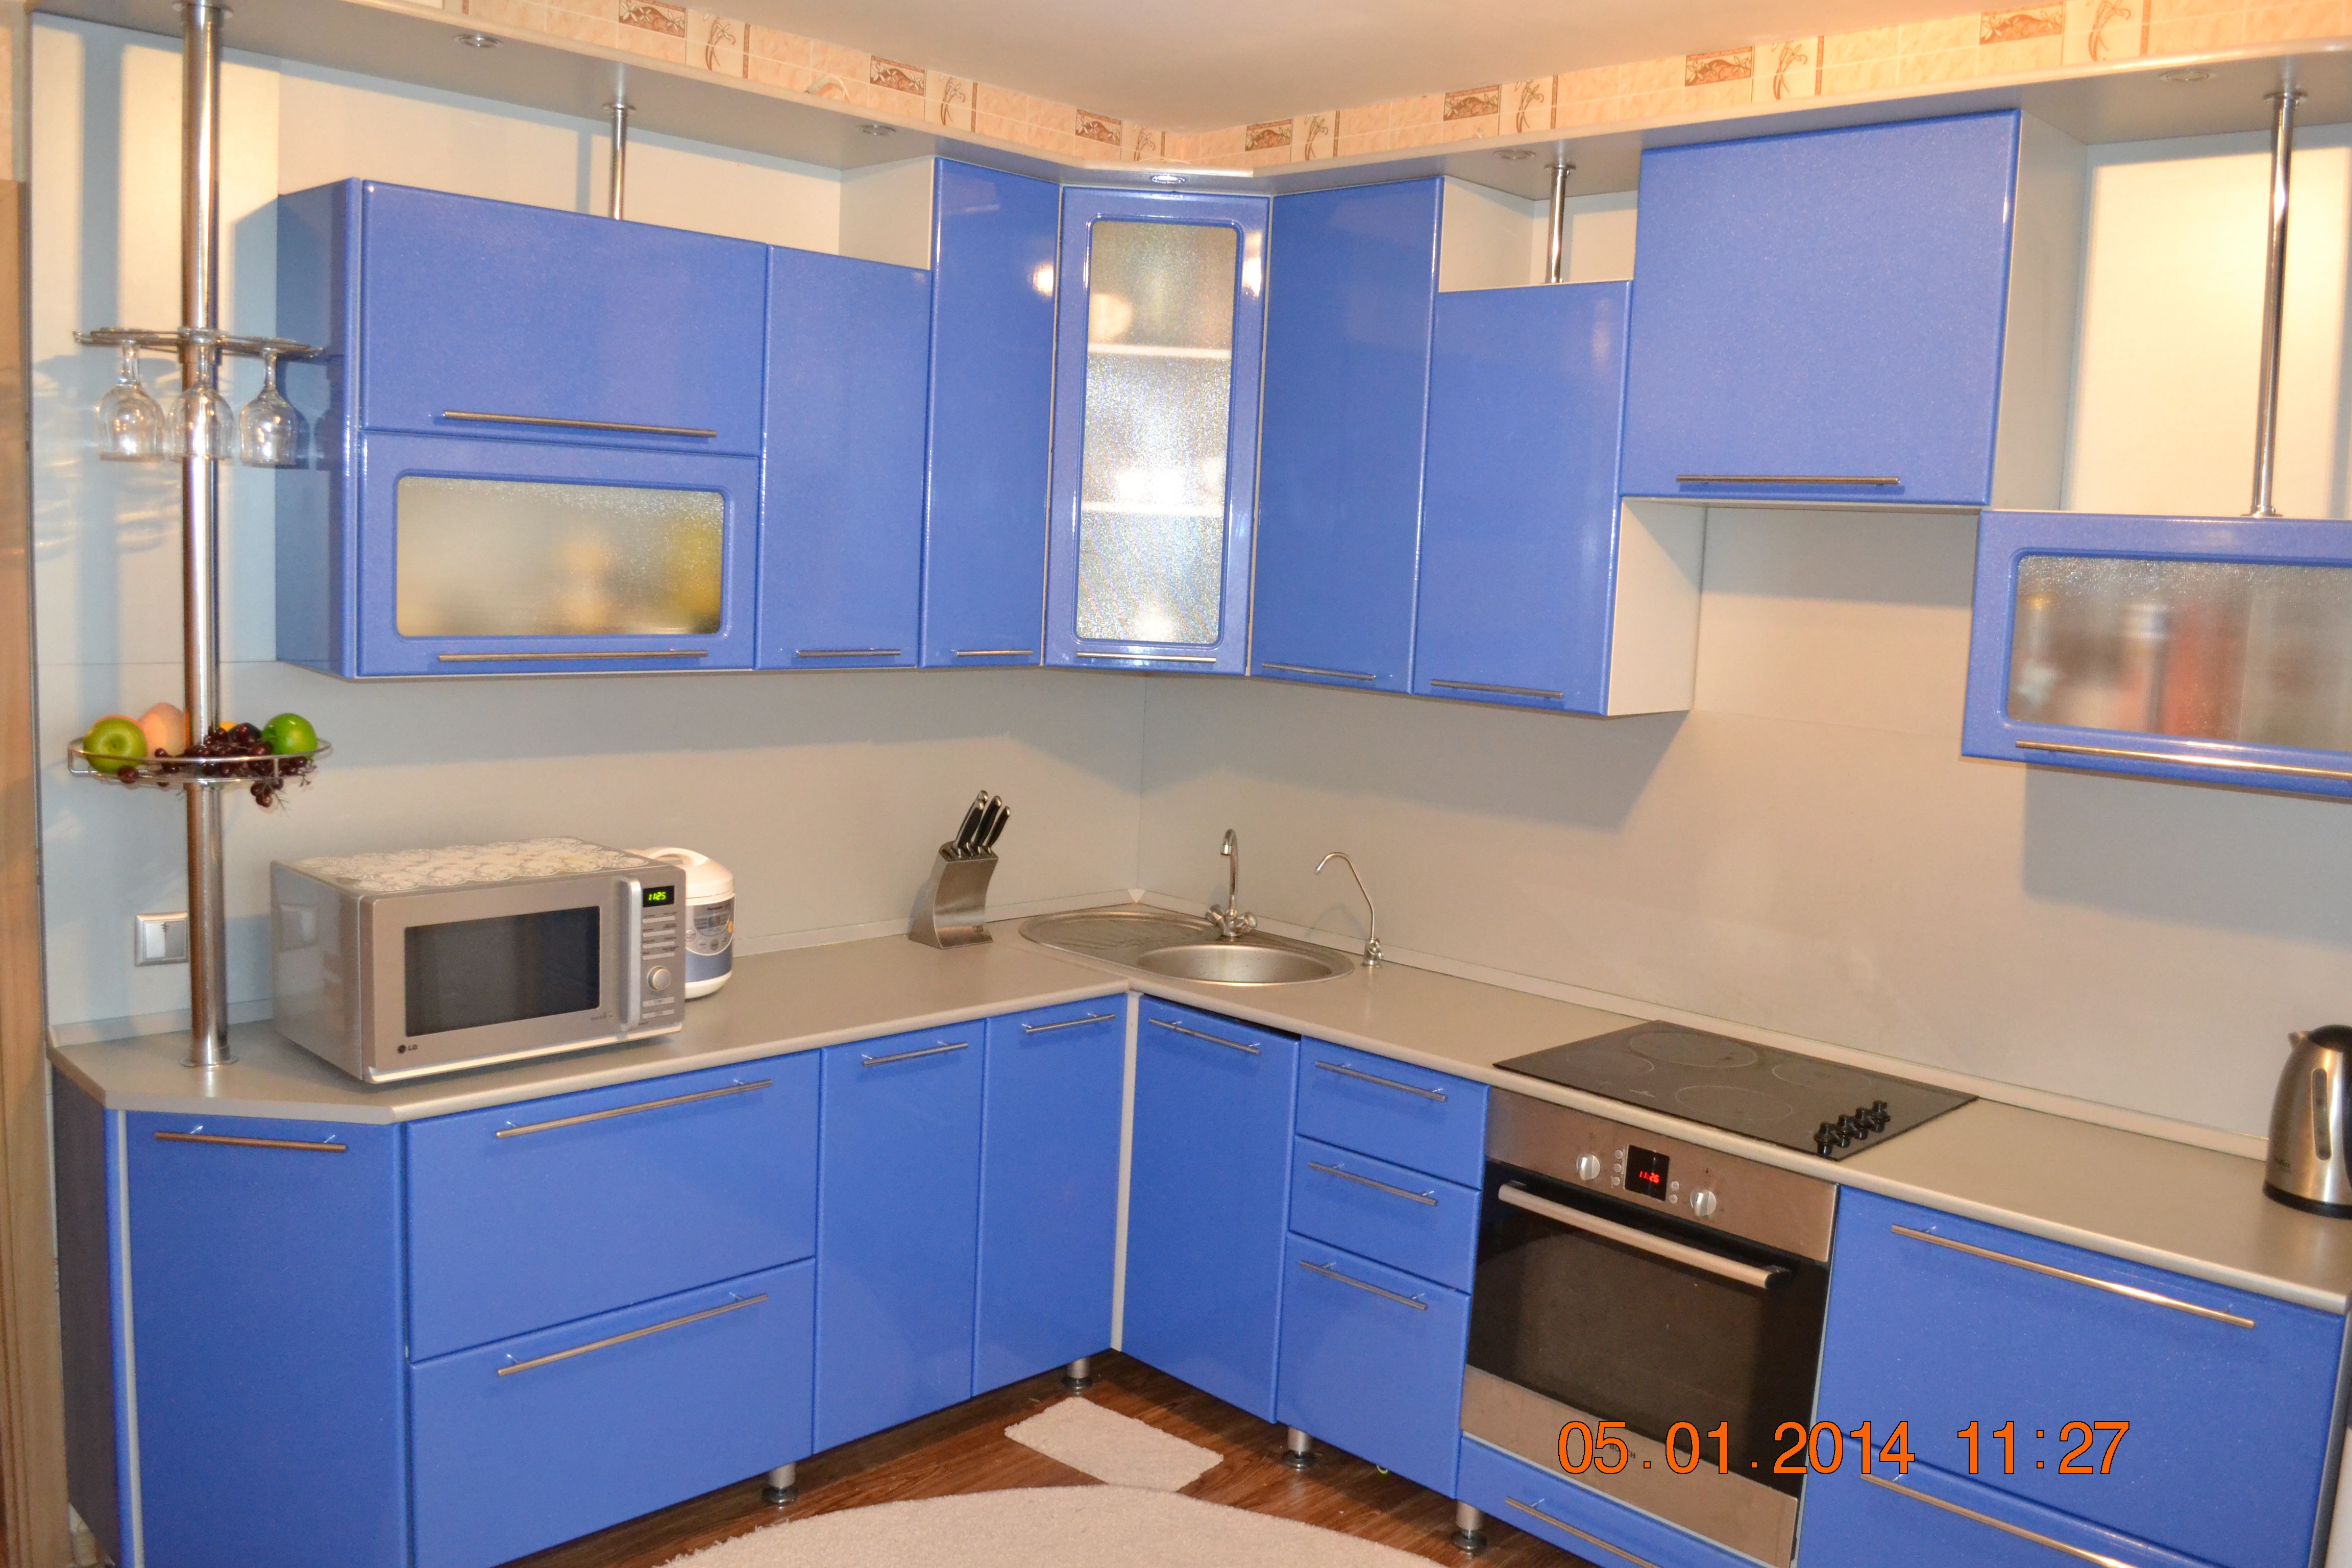 Кухонные гарнитуры уфе б у. Кухонный гарнитур. Угловые кухни. Кухонный гарнитур угловой синий. Кухня в отличном состоянии.